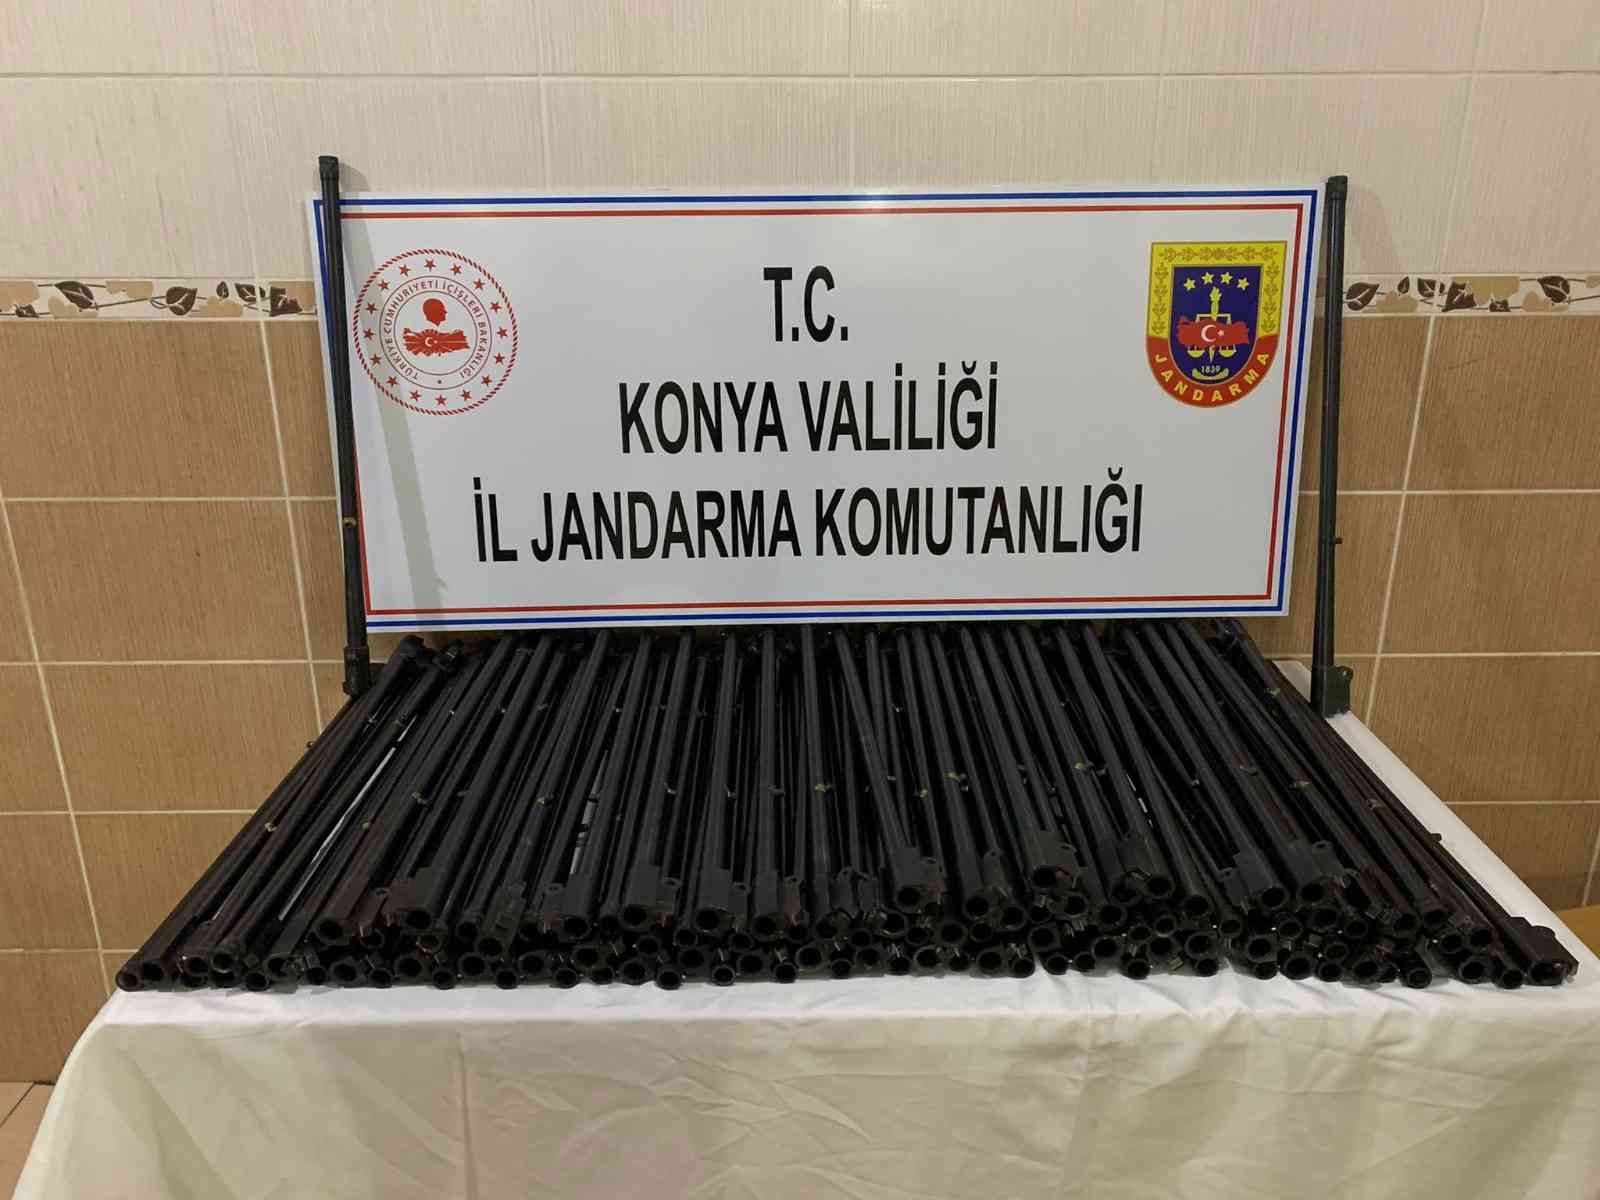 Konya’da kargoyla Hakkari’ye gönderilen 100 adet av tüfeği namlusu ele geçirildi #konya